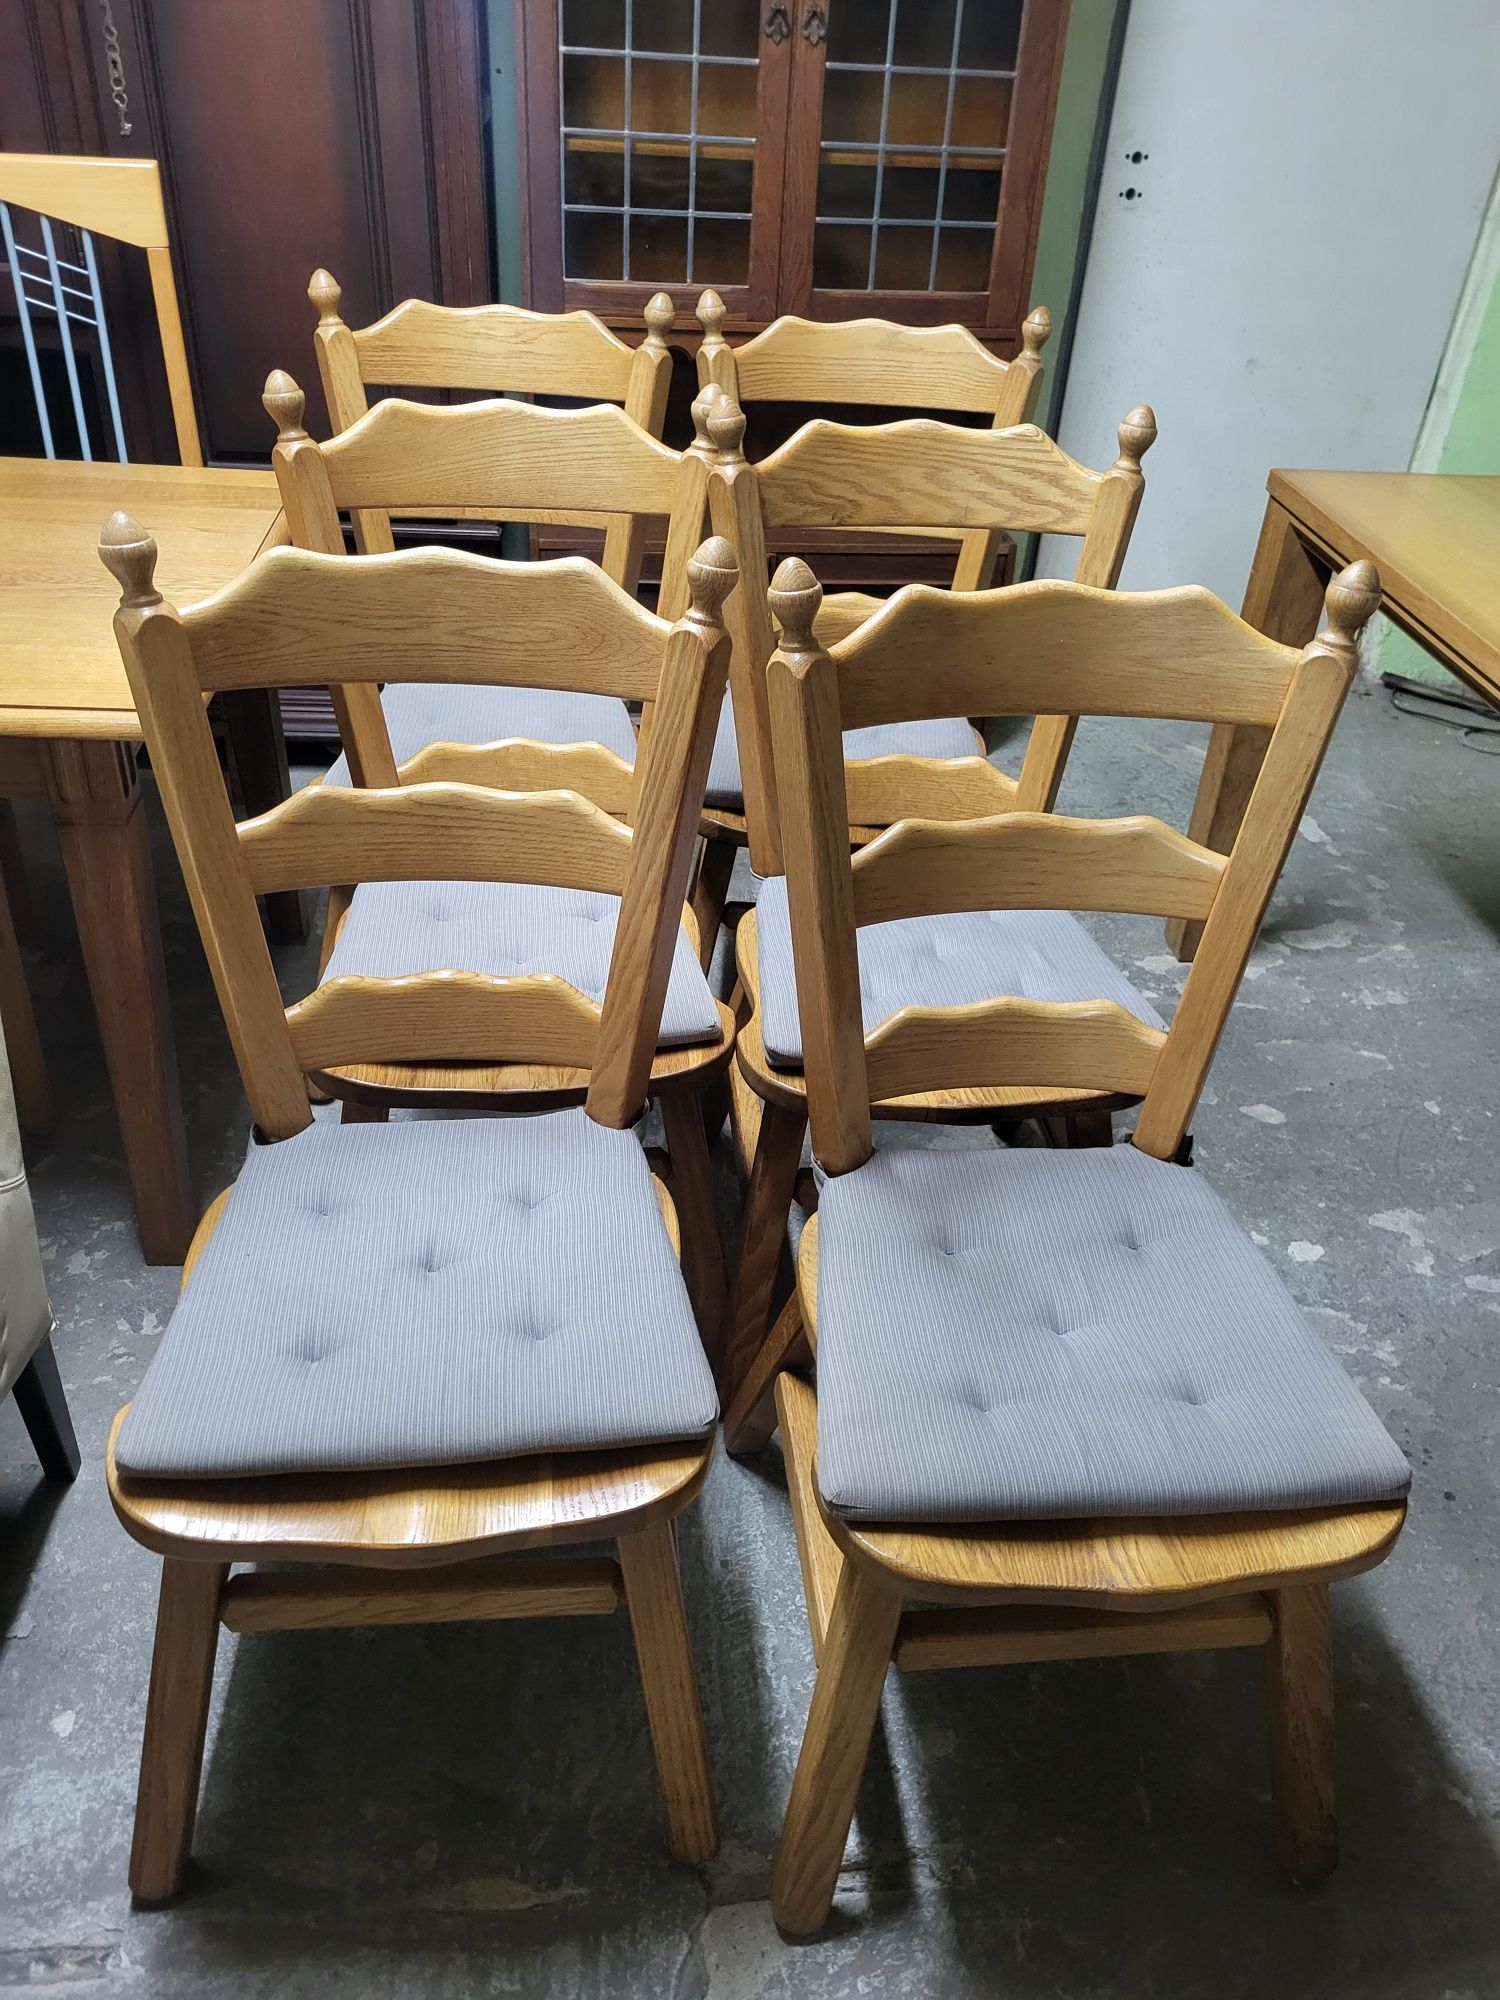 Krzesła dębowe 6 szt. 150 zł/szt.